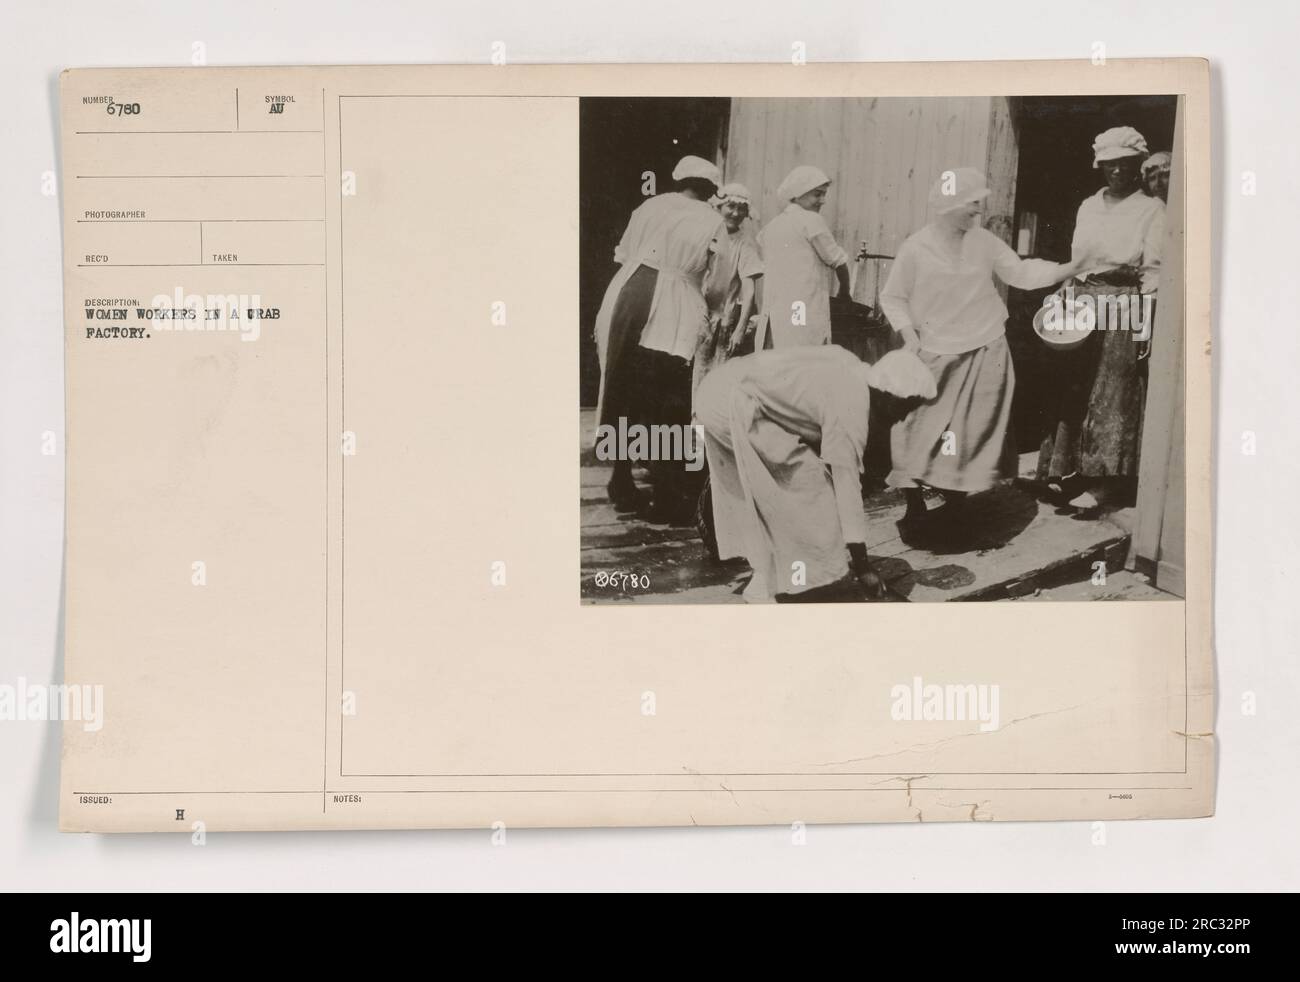 Im Ersten Weltkrieg werden weibliche Arbeiterinnen in einer Krabbenfabrik gesehen. Dieses Bild mit der Bezeichnung 111-SC-6780 wurde als Teil einer Sammlung aufgenommen, die "Fotos amerikanischer Militäraktivitäten während des Ersten Weltkriegs" genannt wurde. Es zeigt Frauen, die in der Fabrik wichtige Arbeit leisten, wahrscheinlich als Teil der Kriegsarbeit. Stockfoto